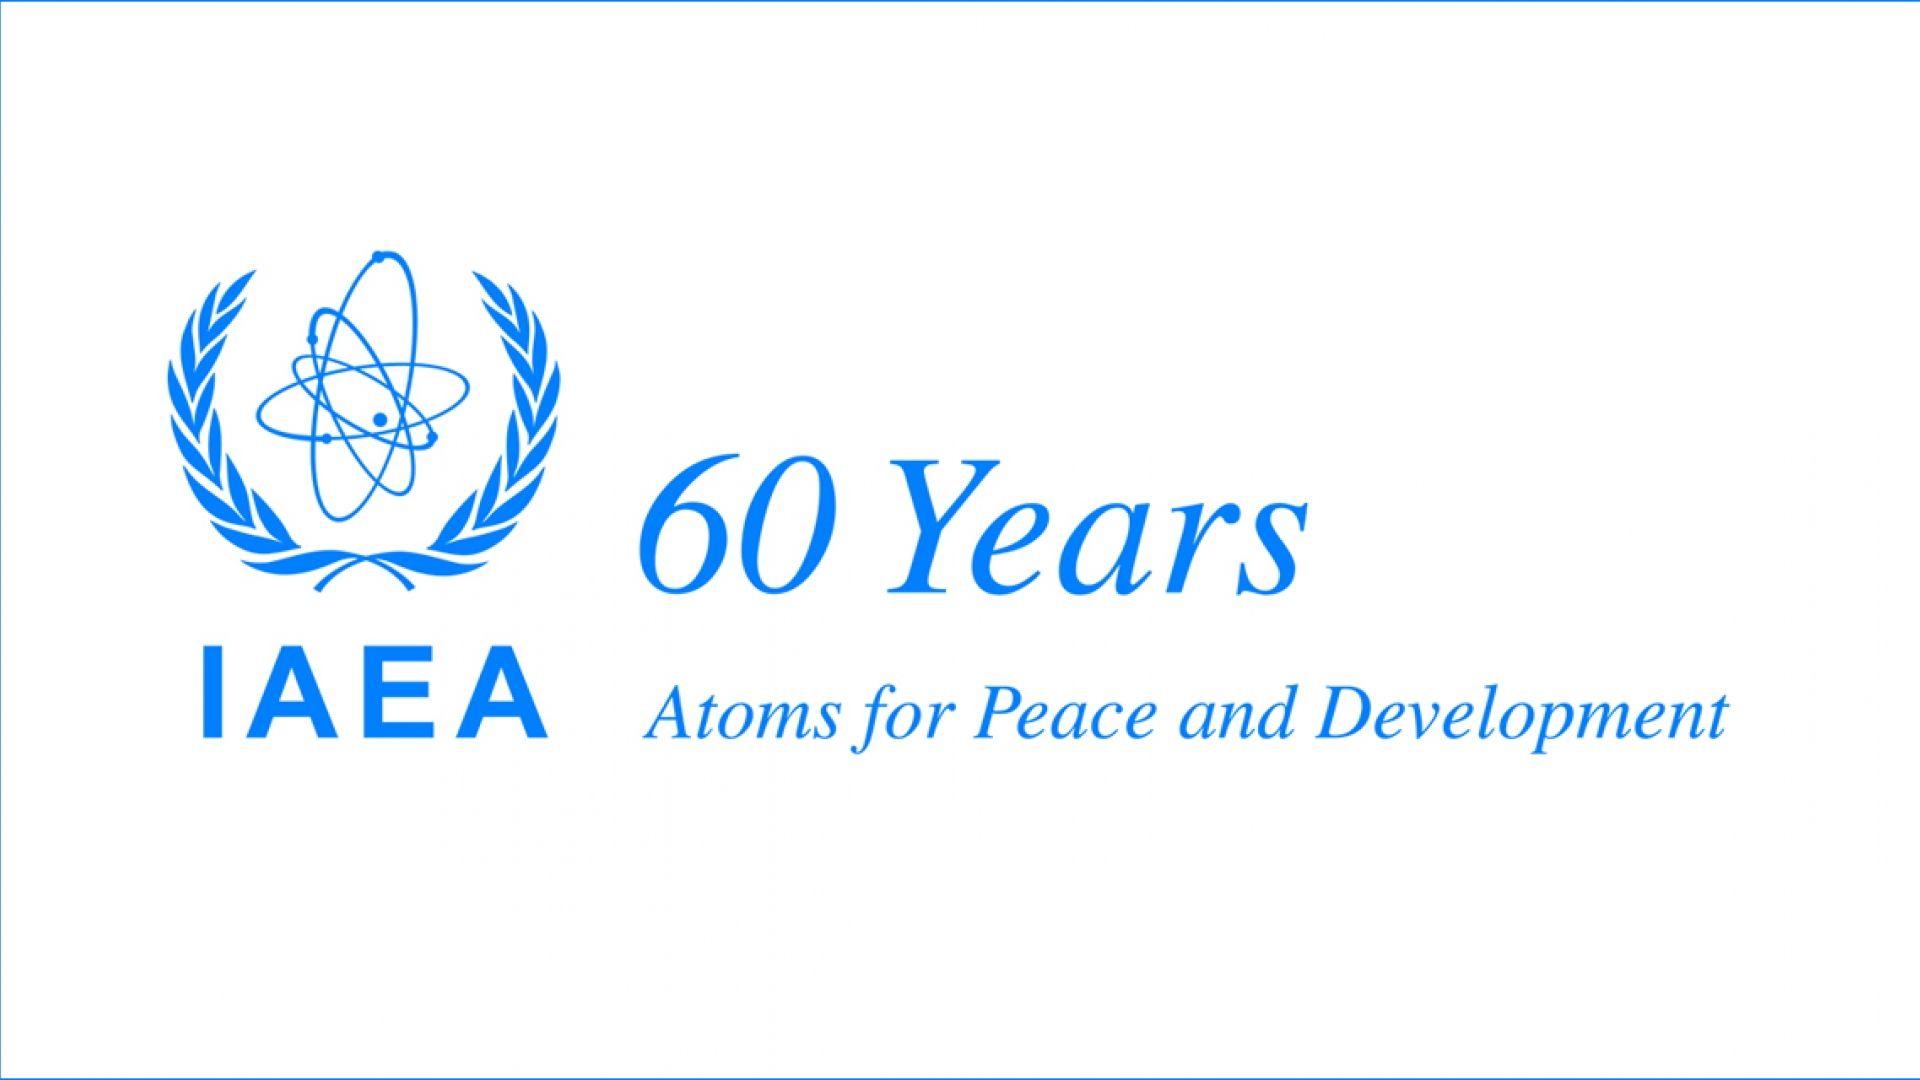 IAEA Logo - New IAEA Logo Announced: 60 Years of IAEA - Atoms for Peace and ...